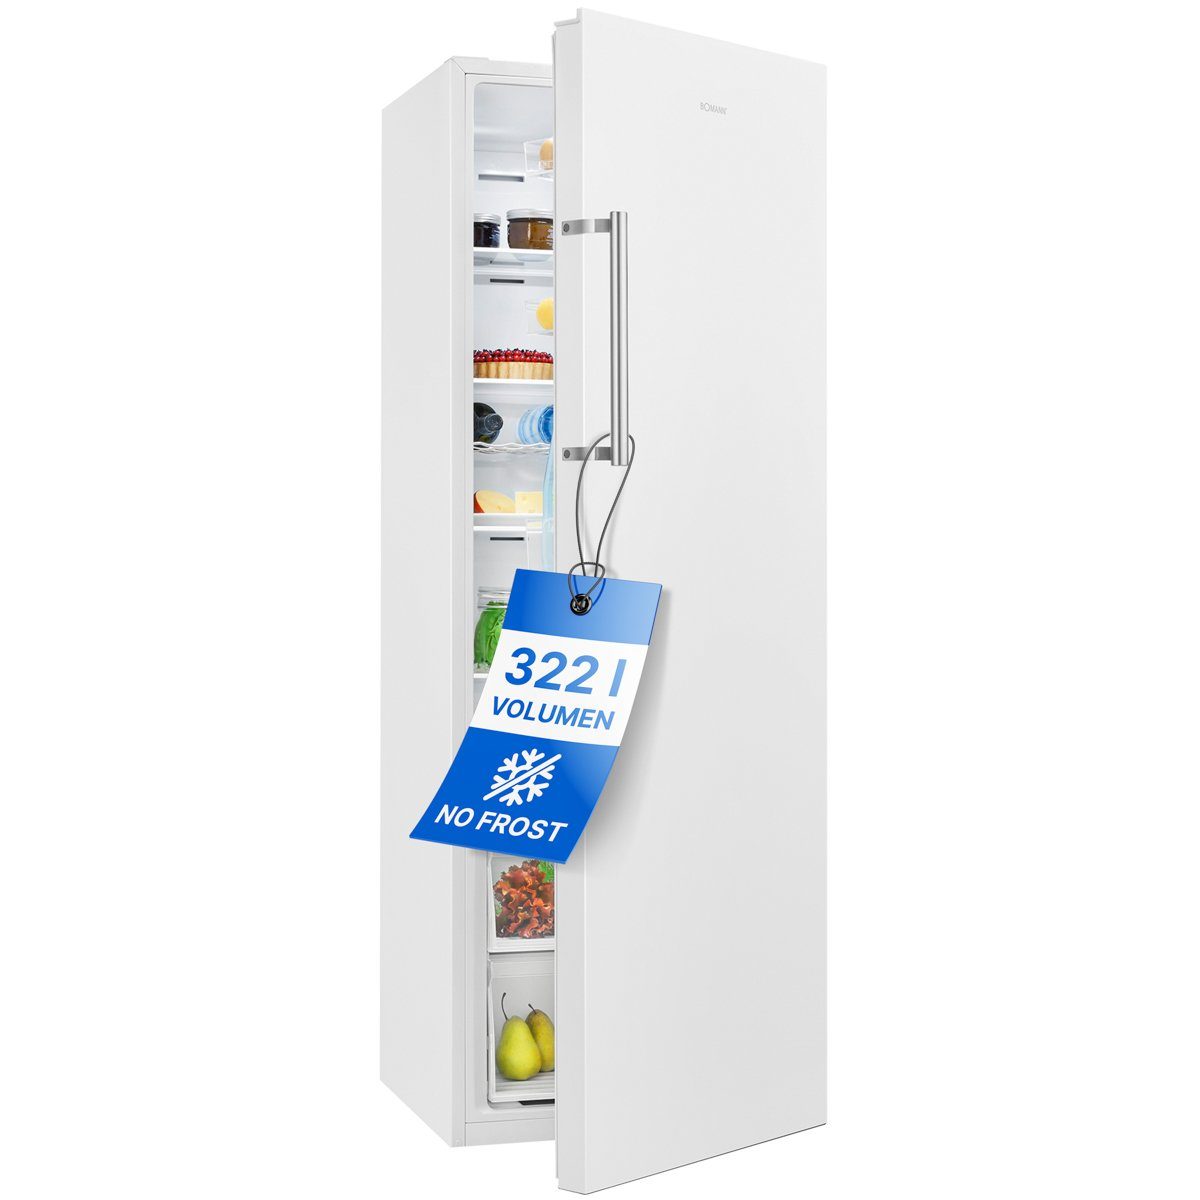 BOMANN Vollraumkühlschrank VS 7345, 172 cm hoch, 59.5 cm breit, MultiAirflow-System, Total No Frost, LED Display, 322 Liter